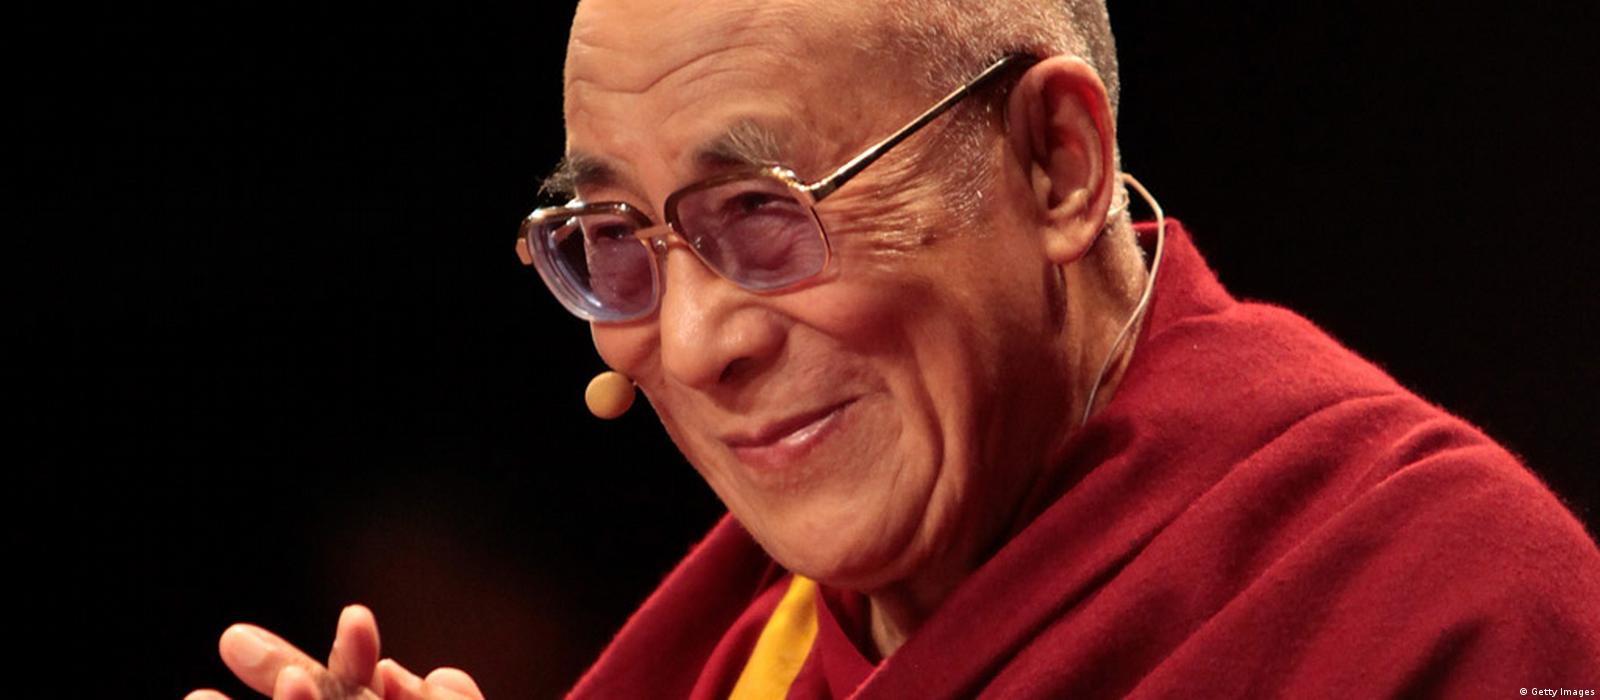 俞正声赴藏区，矛头再指达赖喇嘛– DW – 2013年1月8日